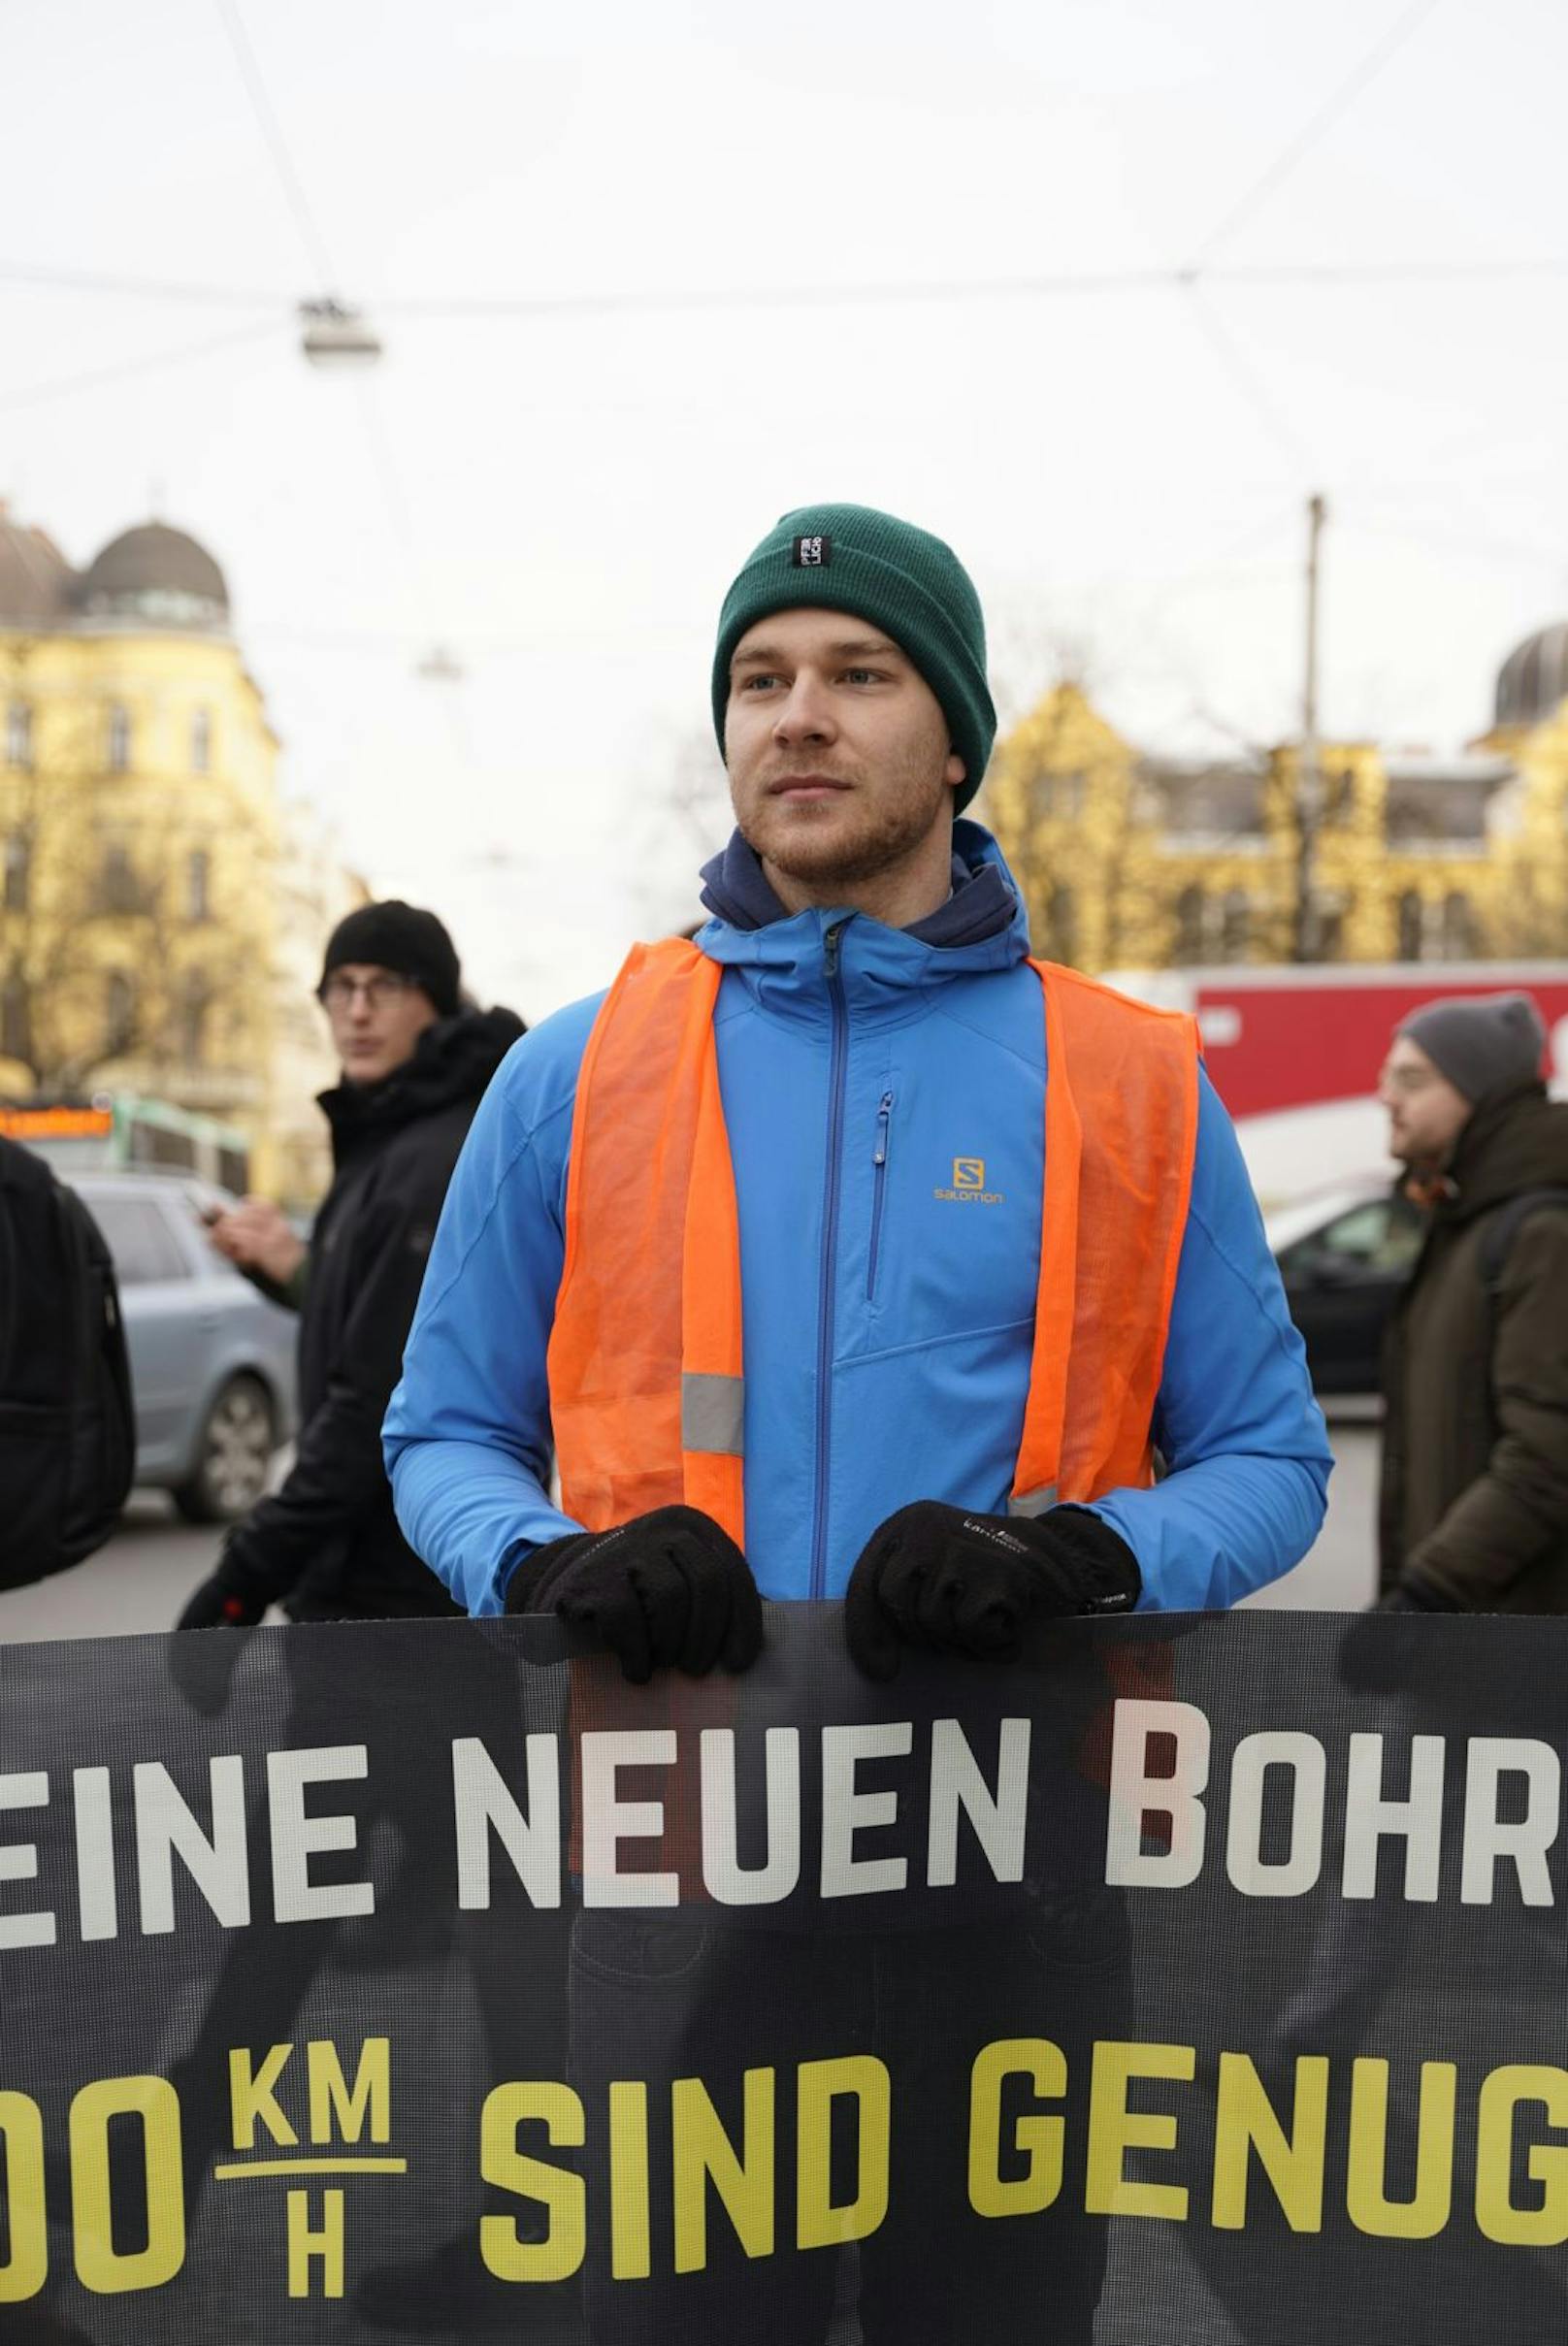 Klima-Aktivisten der "Letzten Generation" haben am 13. März 2023 mit einer Klebe-Blockade den Verkehr auf der Glacisstraße in Graz lahmgelegt.